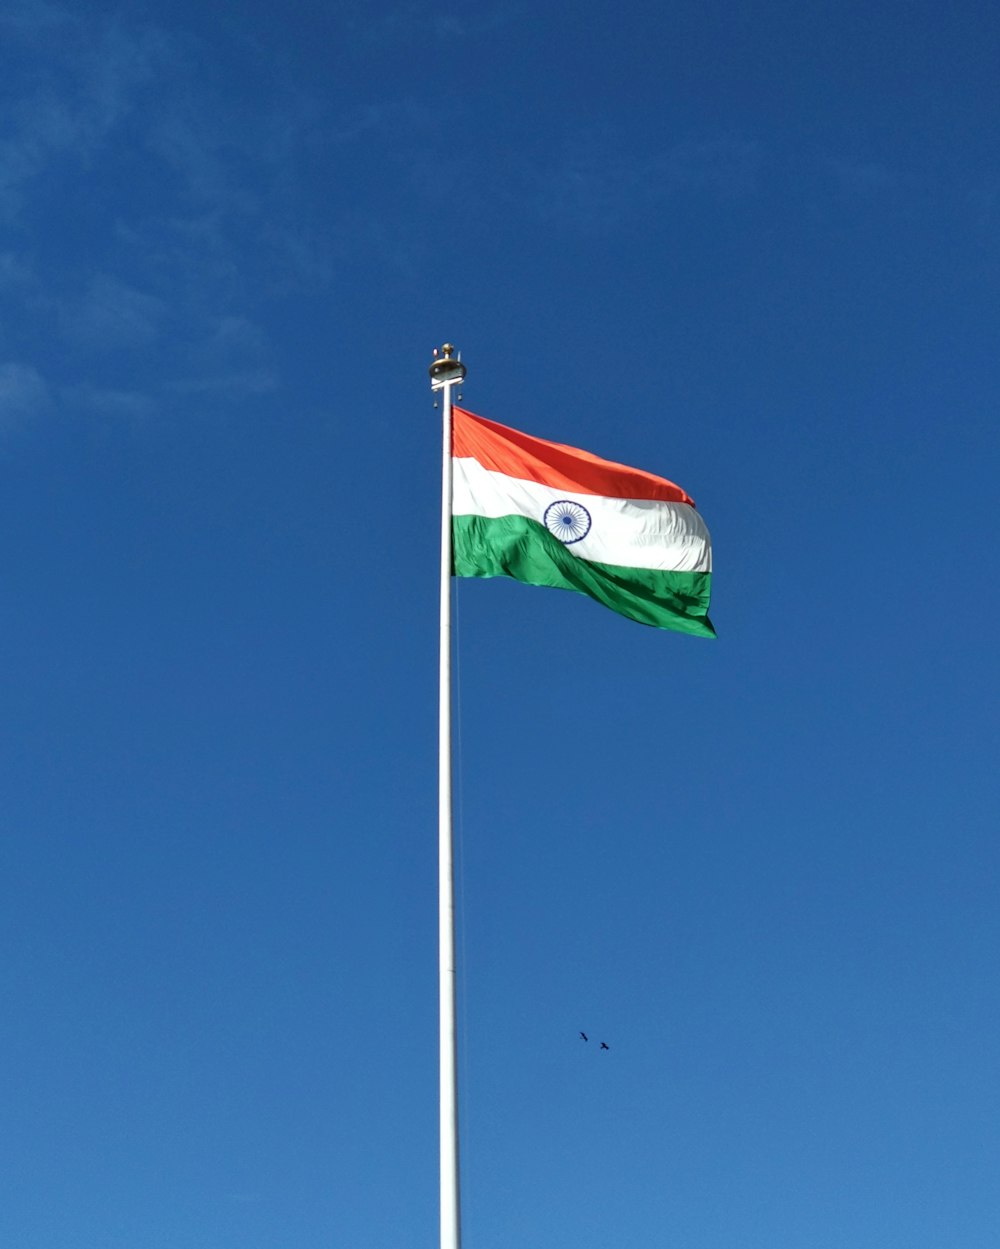 Rot-weiß-grüne Flagge unter blauem Himmel während des Tages